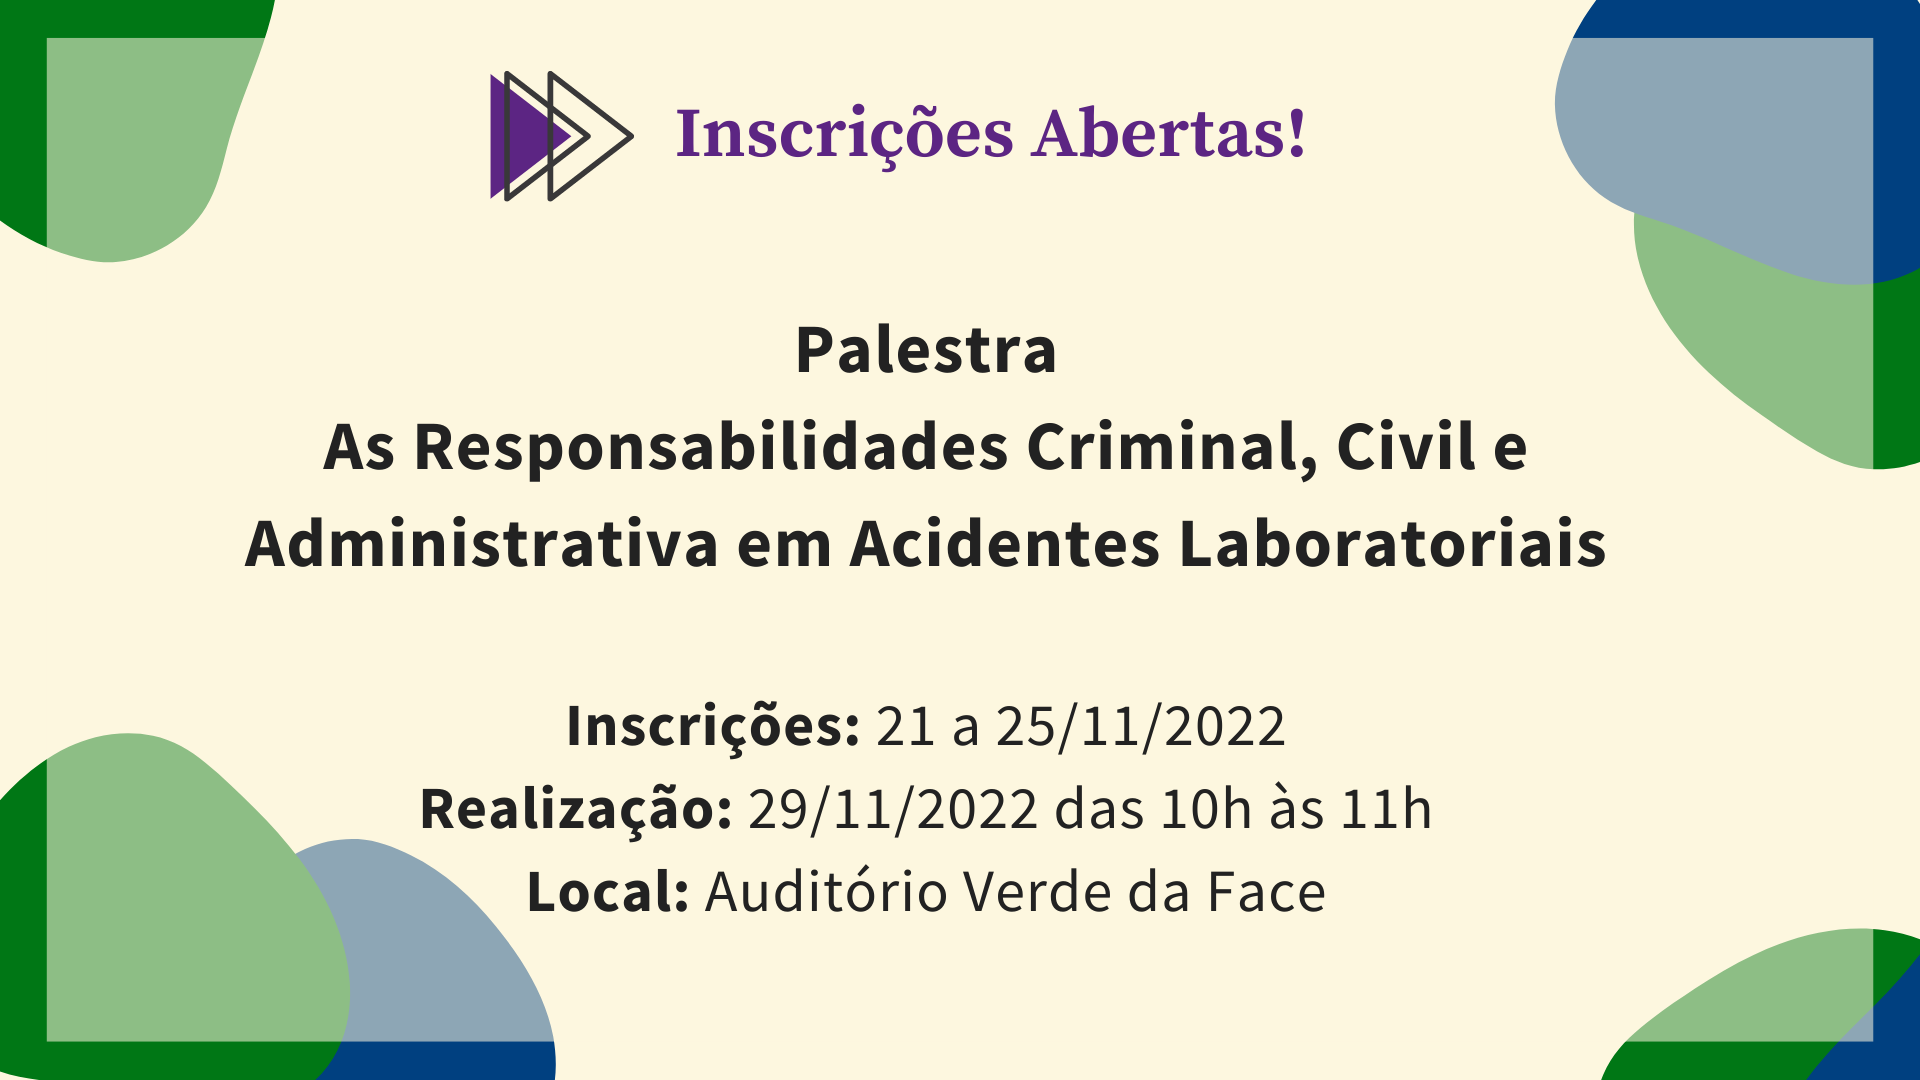 As_Responsabilidades_Criminal_Civil_e_Administrativa_em_Acidentes_LaboratoriaisAs_Responsabilidades_Criminal_Civil_e_Administrativa_em_Acidentes_Laboratoriais.png